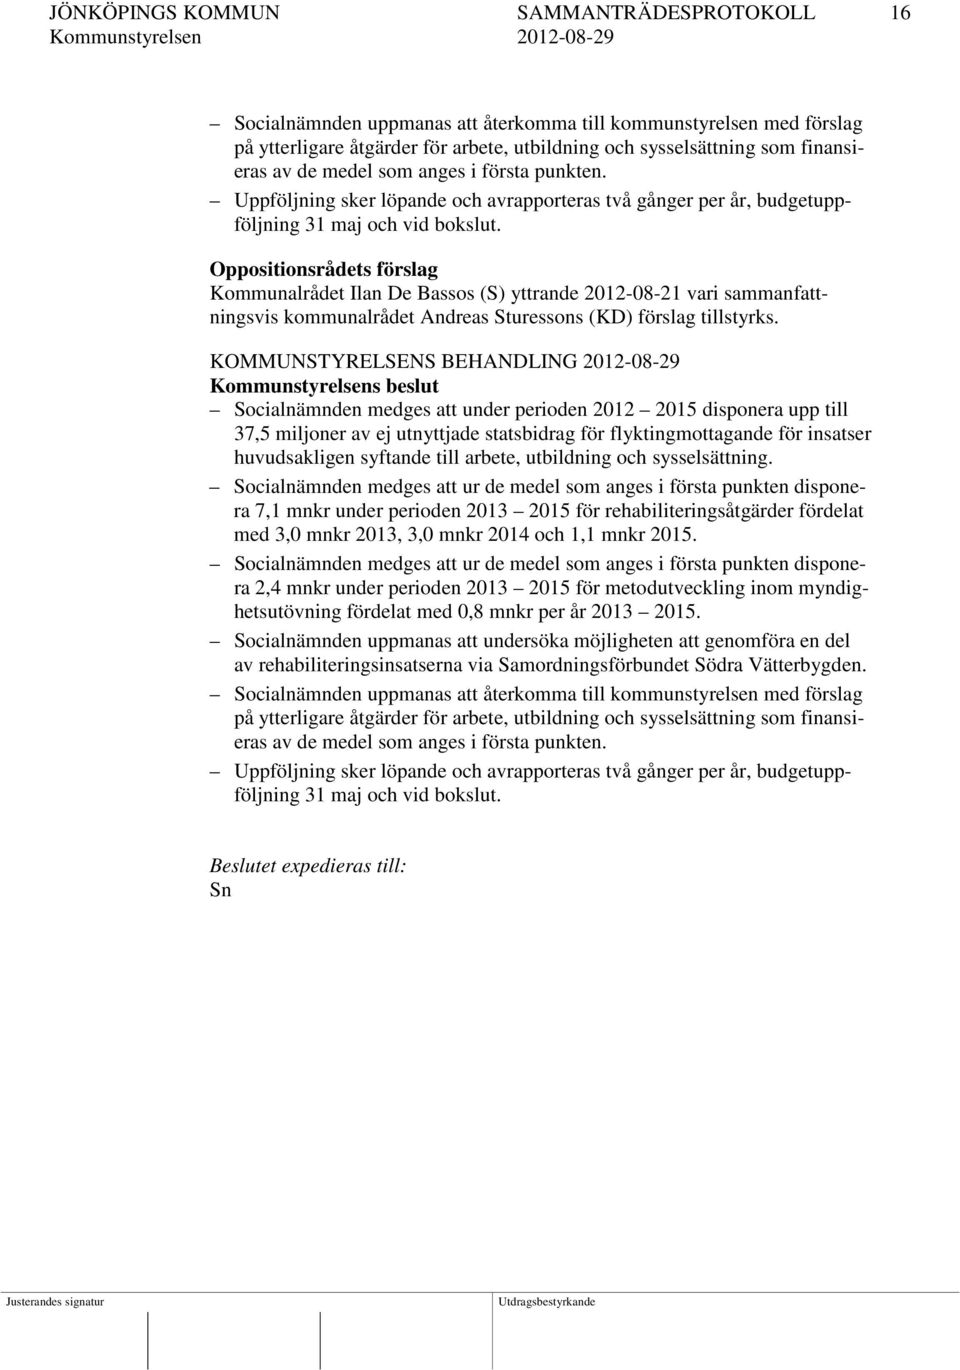 Oppositionsrådets förslag Kommunalrådet Ilan De Bassos (S) yttrande 2012-08-21 vari sammanfattningsvis kommunalrådet Andreas Sturessons (KD) förslag tillstyrks.